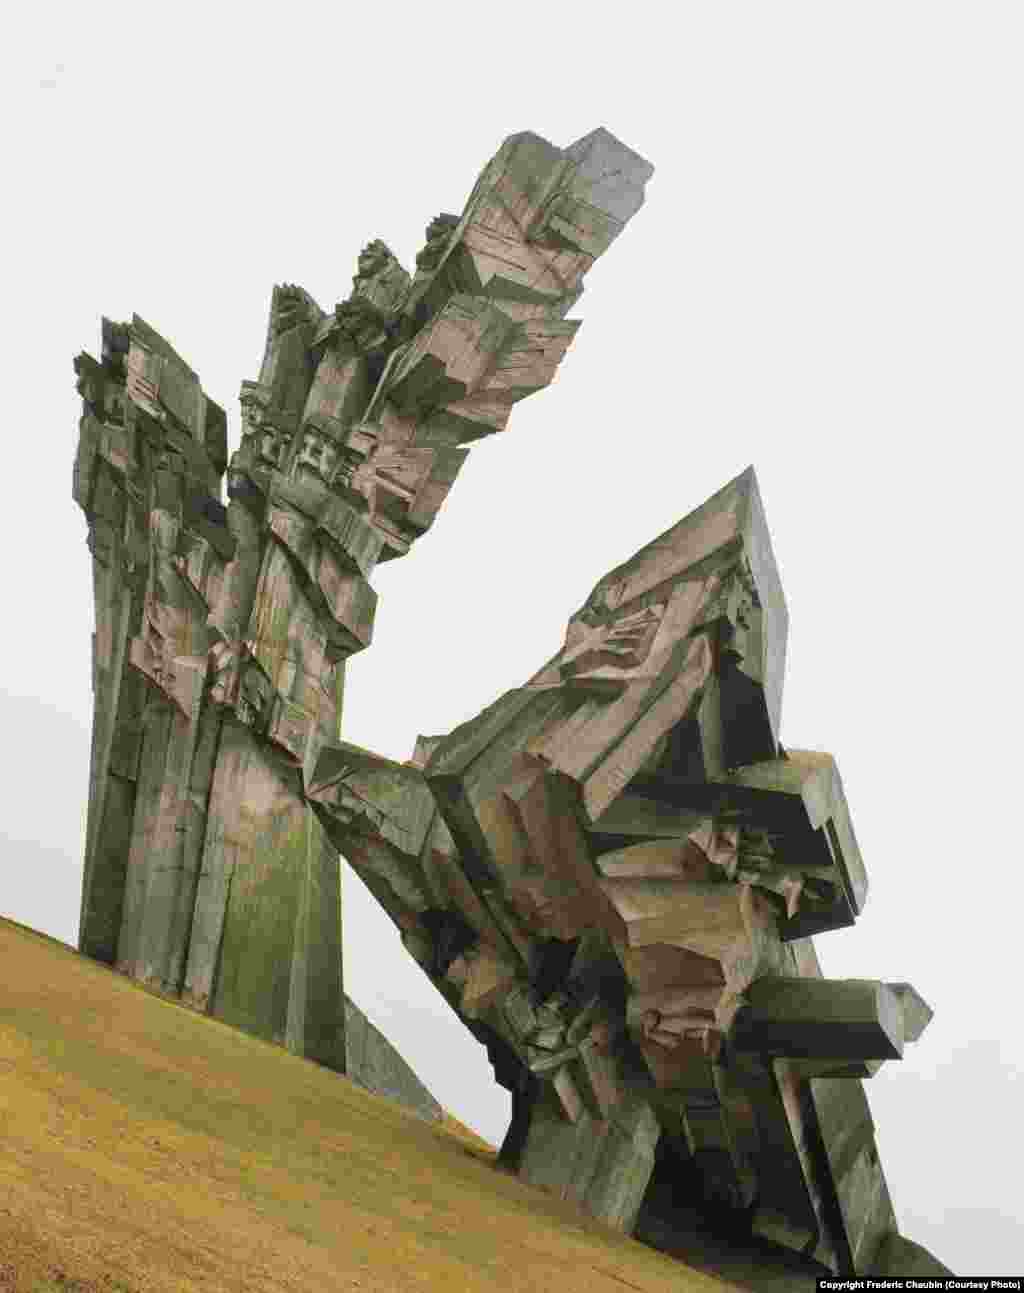 Построенный в XIX веке IX форт Ковенской крепости в Каунасе (Литве) НКВД использовало в качестве центра временного содержания для политзаключенных, которых позже отправляли в трудовые лагеря ГУЛАГа. Во время оккупации Литвы Германией во время Второй мировой форт использовали для массовых расстрелов. На месте трагедий в 1983 году возвели 32-метровую скульптуру Альфонсаса Амбразиунаса